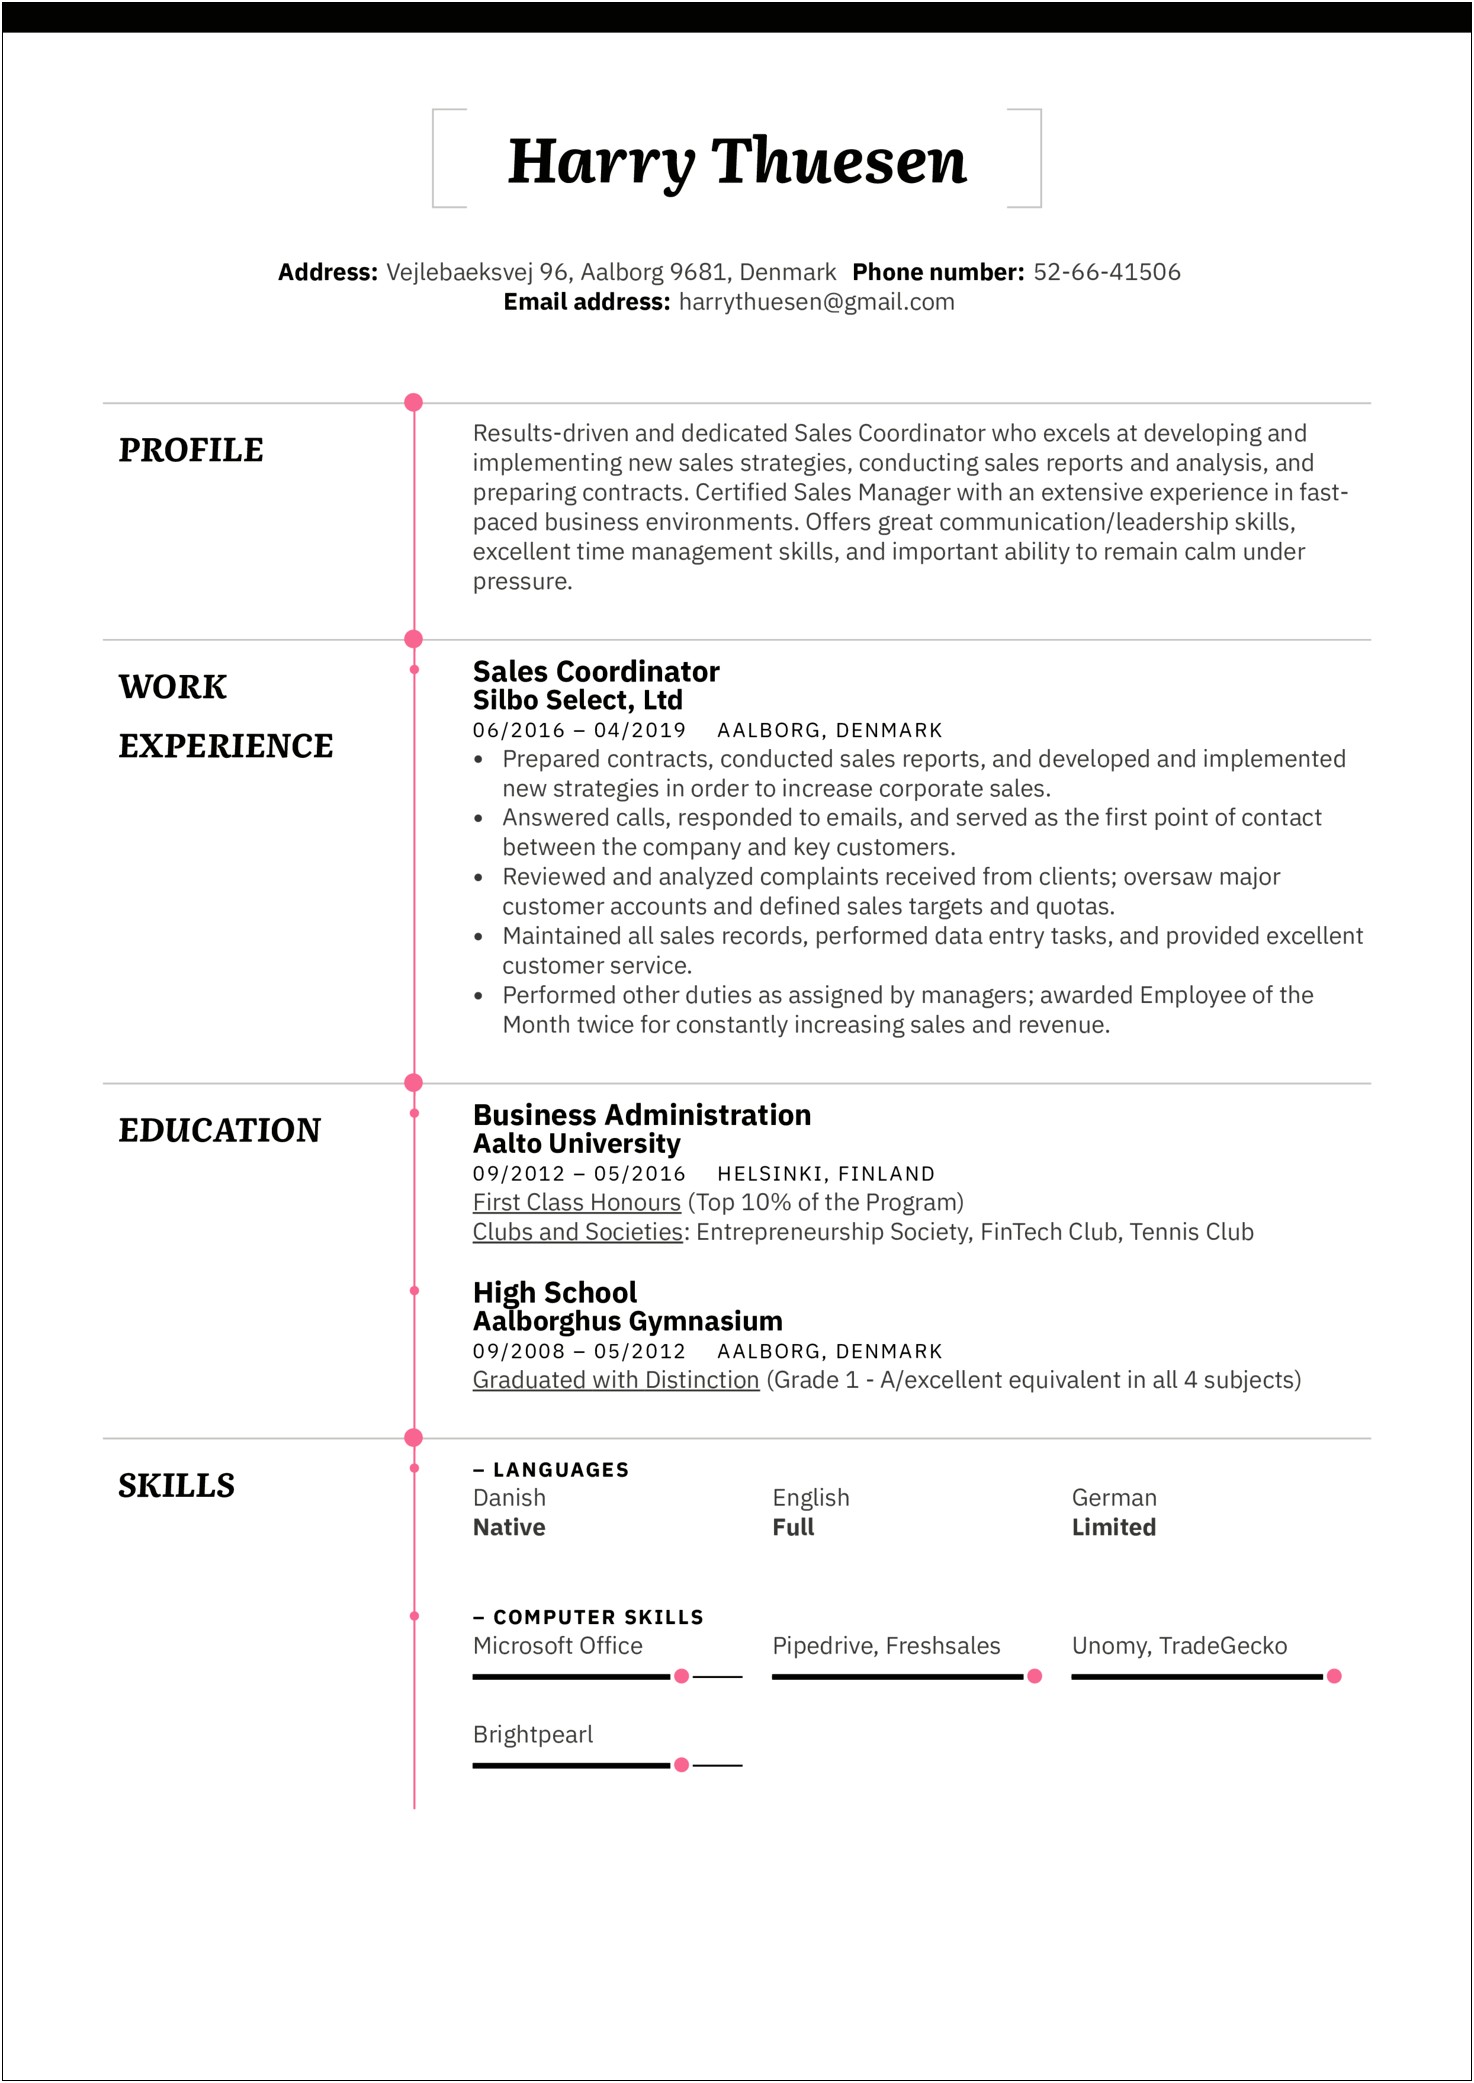 Resume Format For Sales Coordinator Jobs